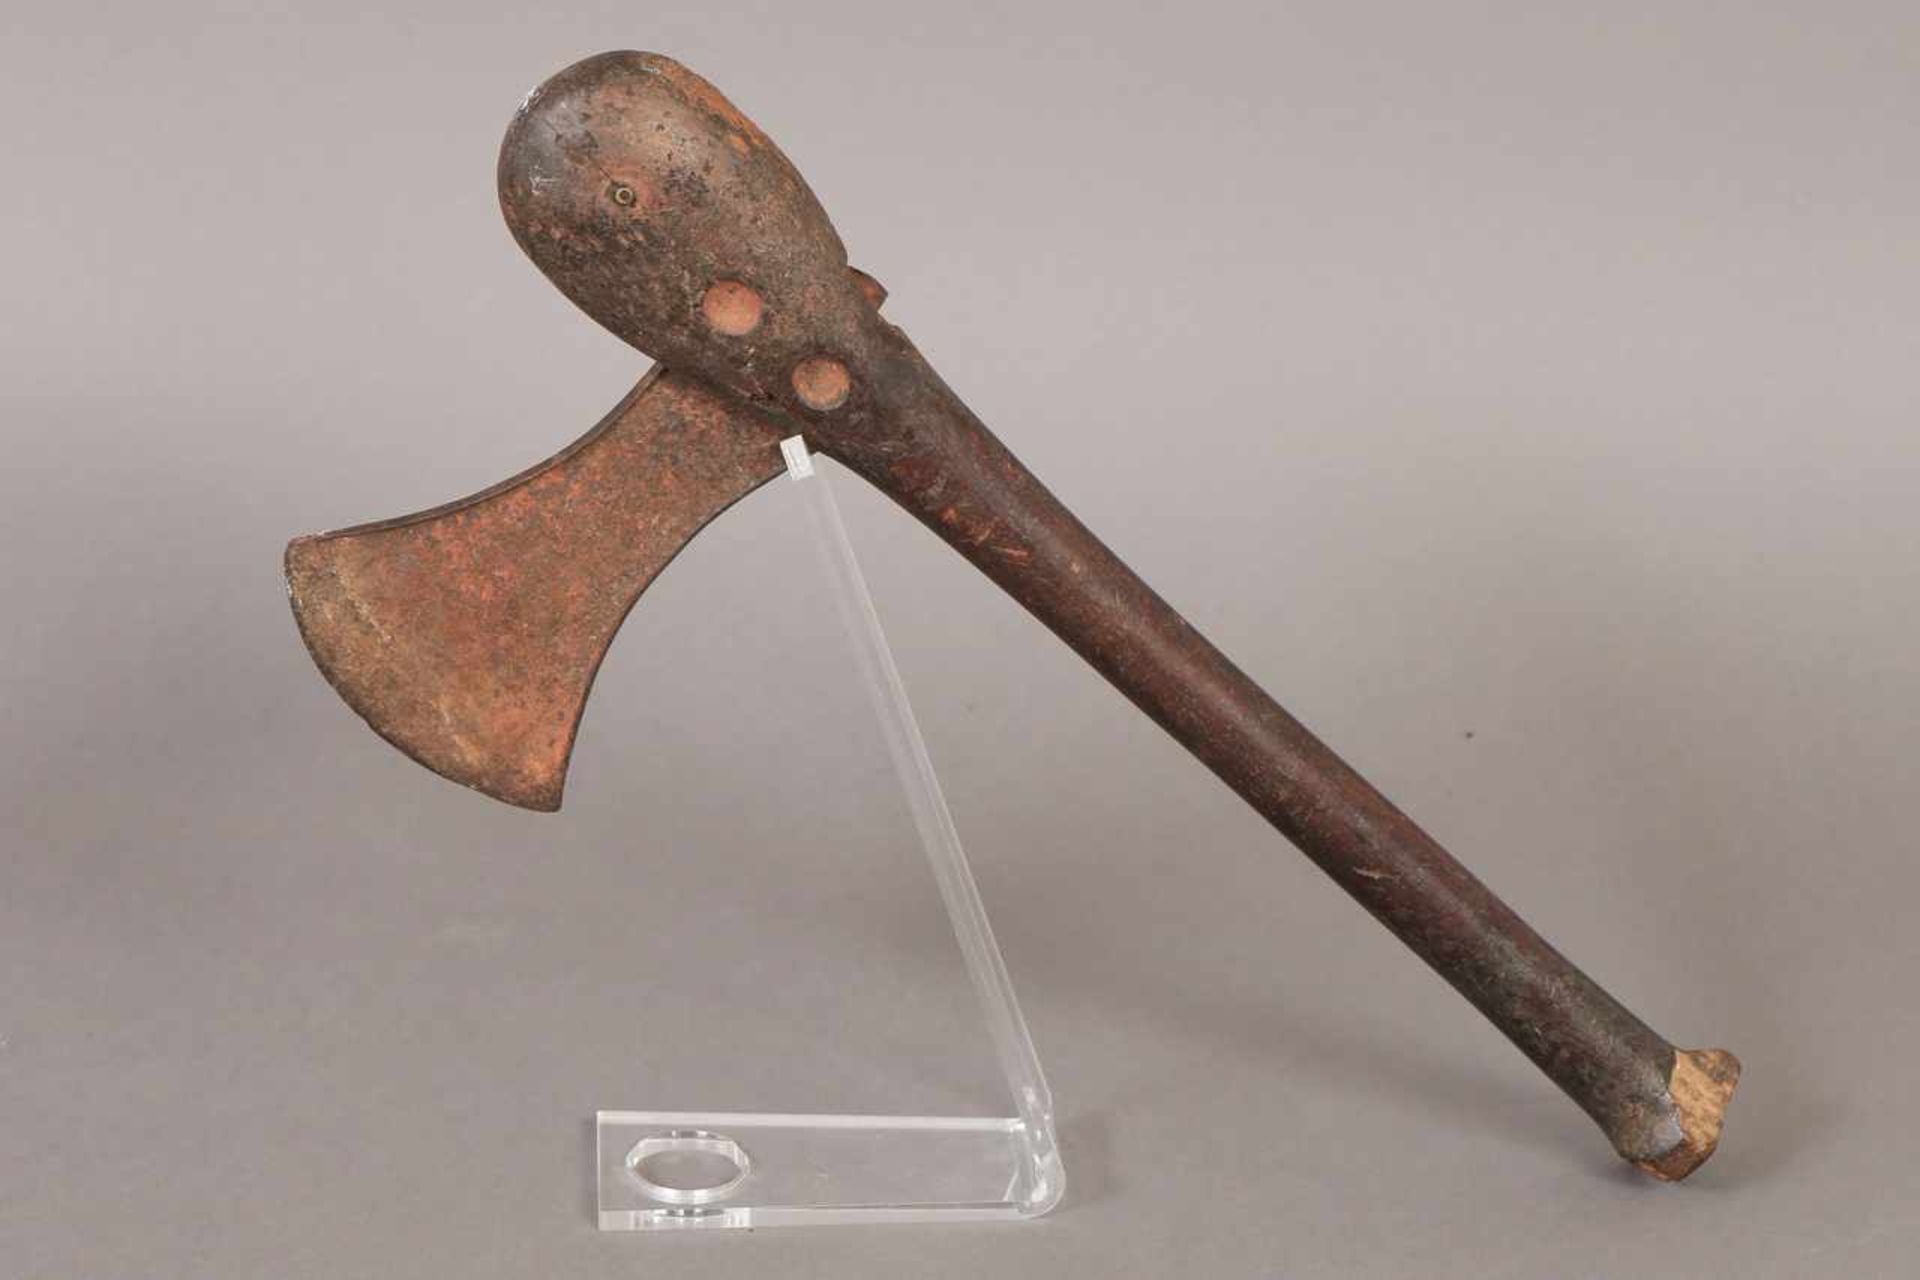 Afrikanisches Querbeil Holz und Eisen, Westafrika, wohl 1. Hälfte 20. Jhdt., H ca. 37cm, am Griff